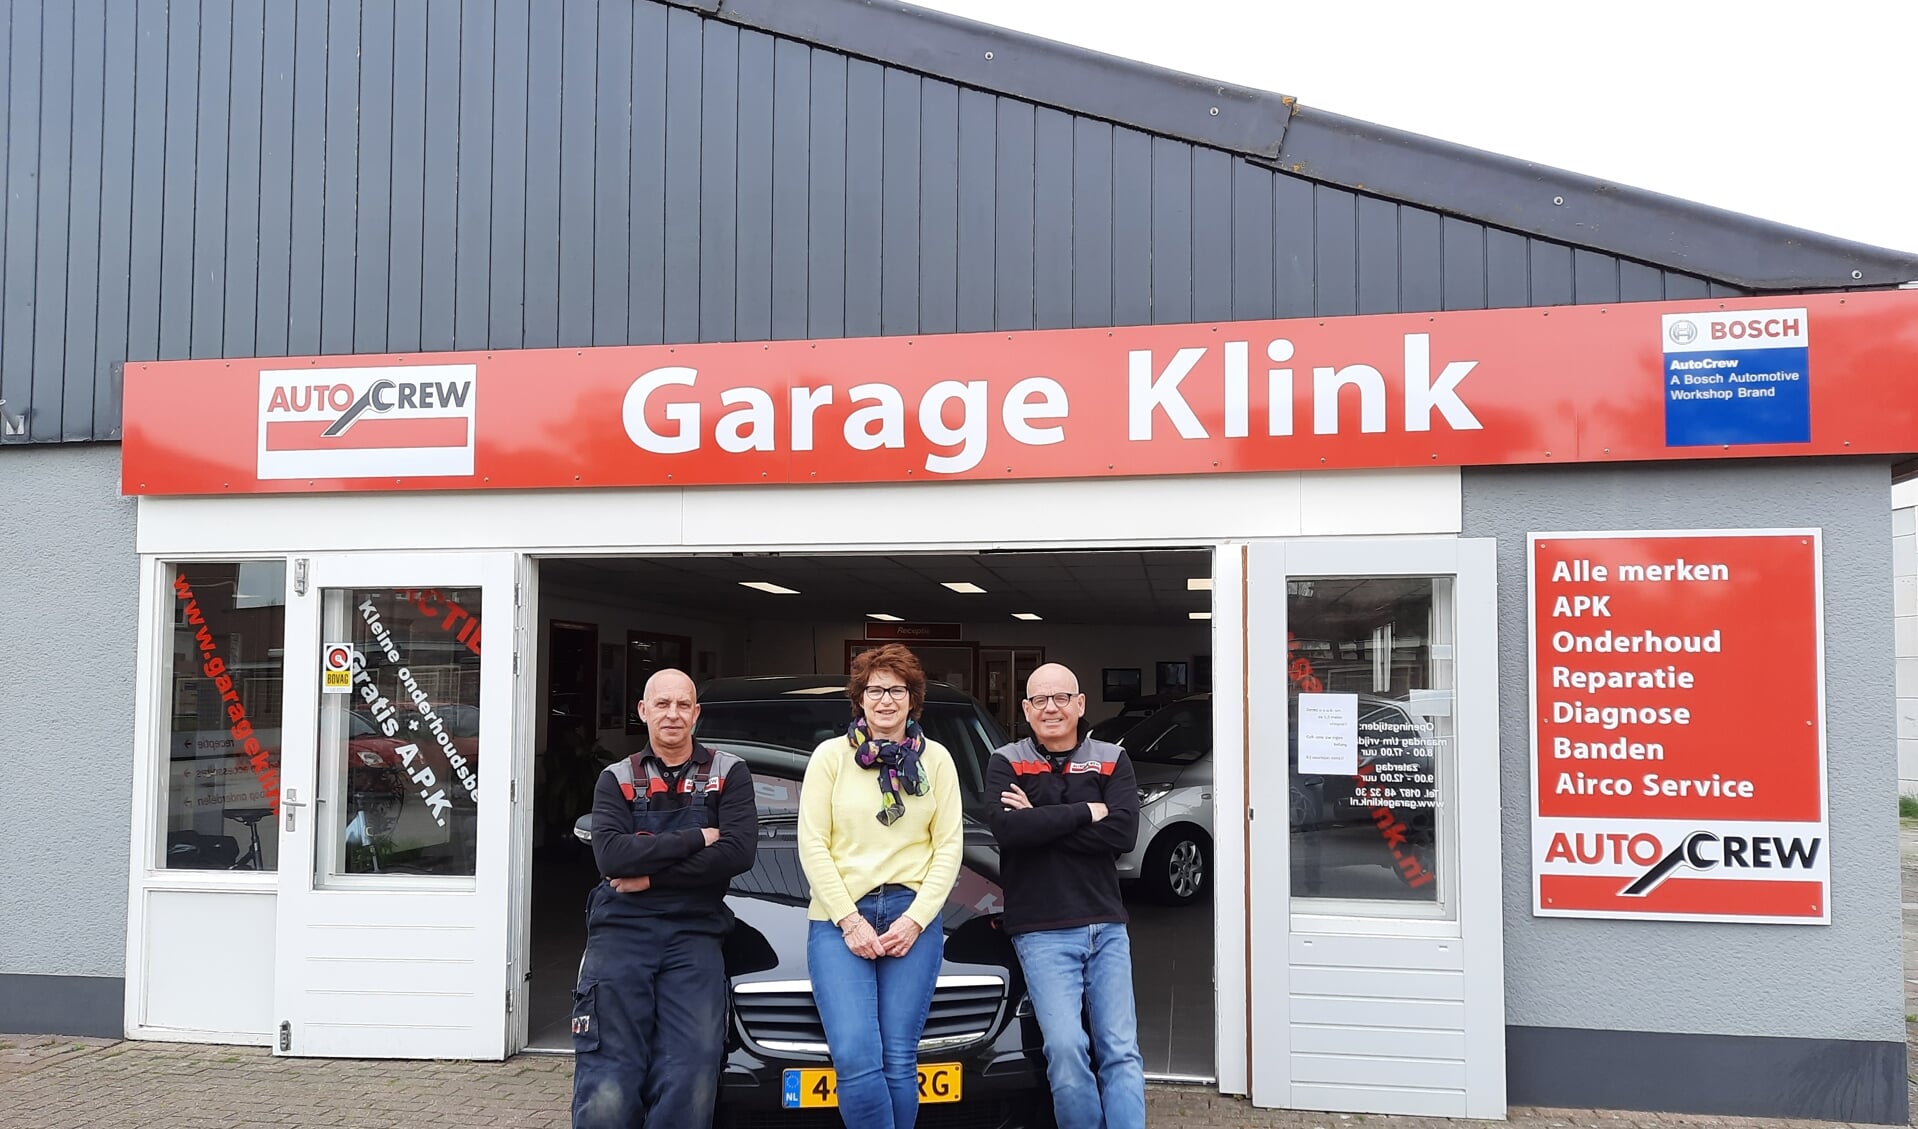 Het kloppende hart van Garage Klink: Gert Boshoven en Jeanette en Adri Kievit.